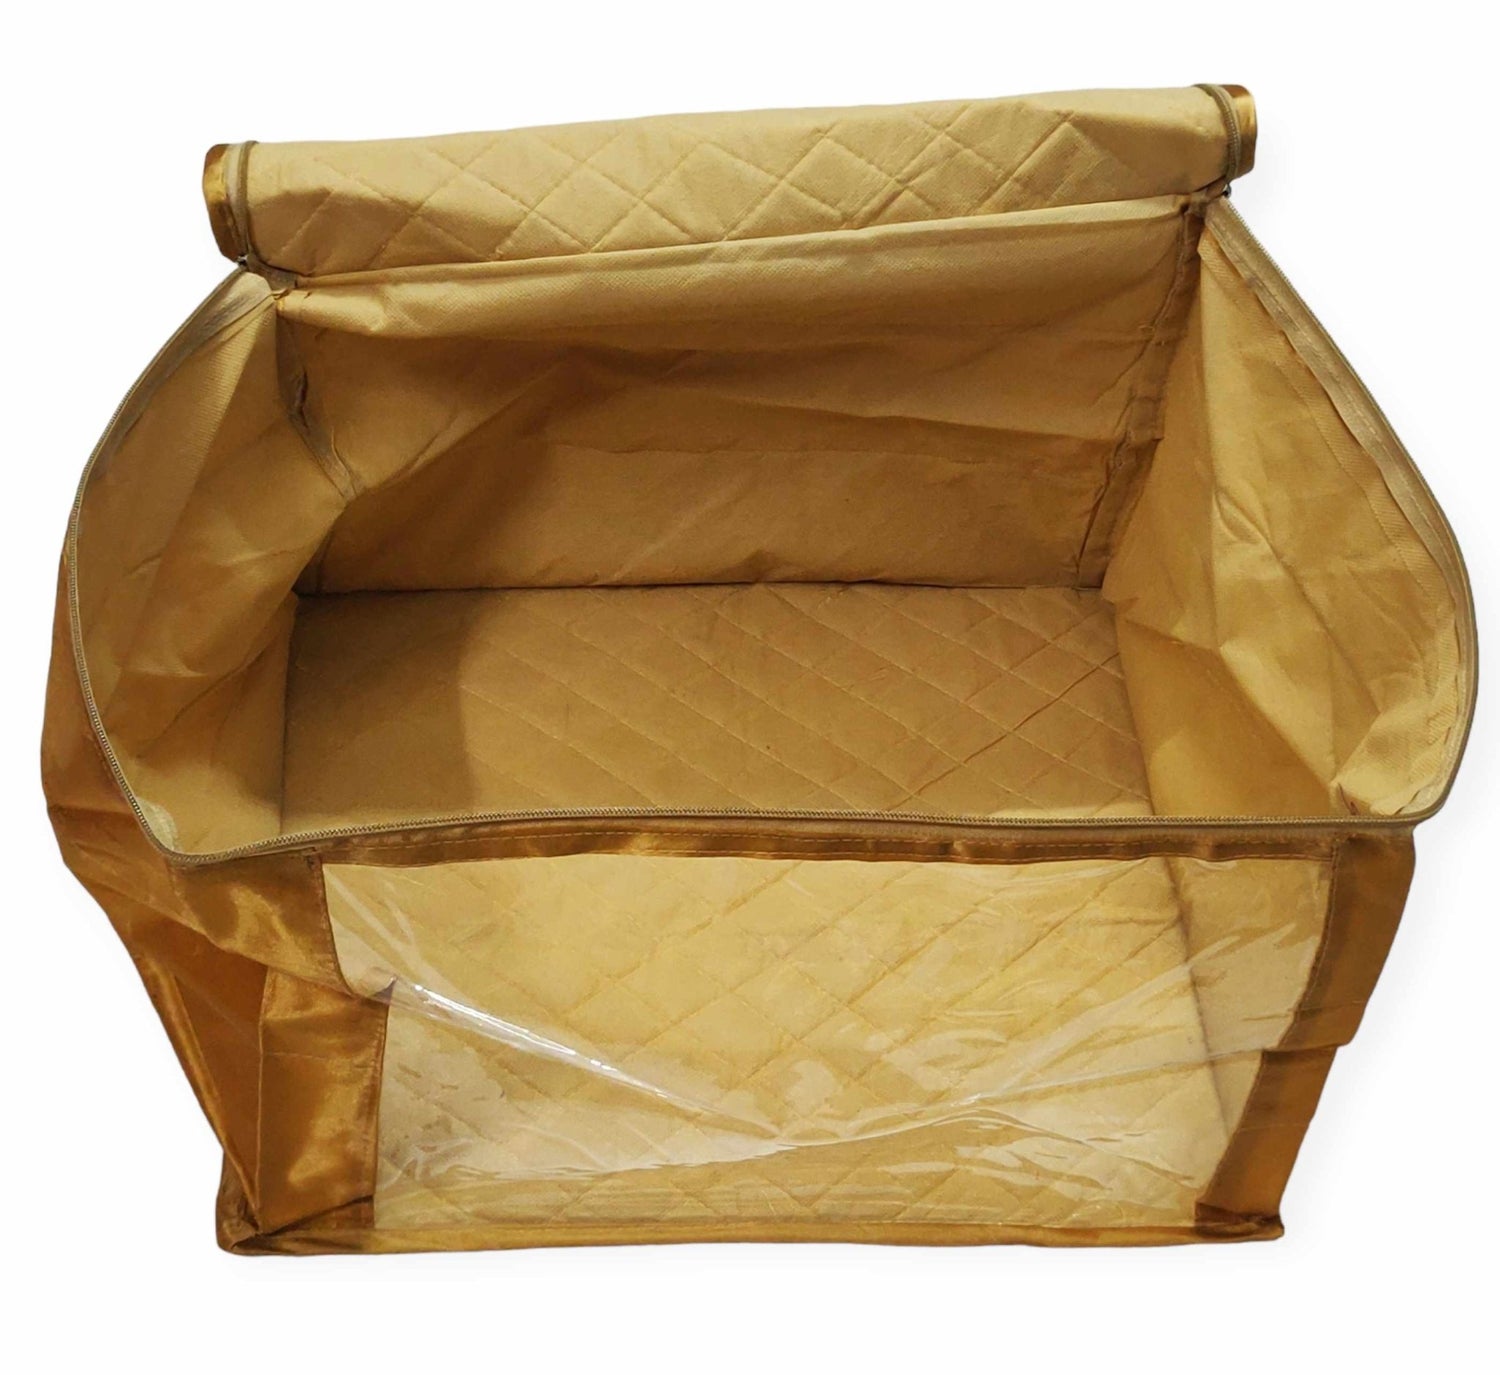 12" Satin big saree cover | closet storage combo pack of 2 pcs. - FAVISM